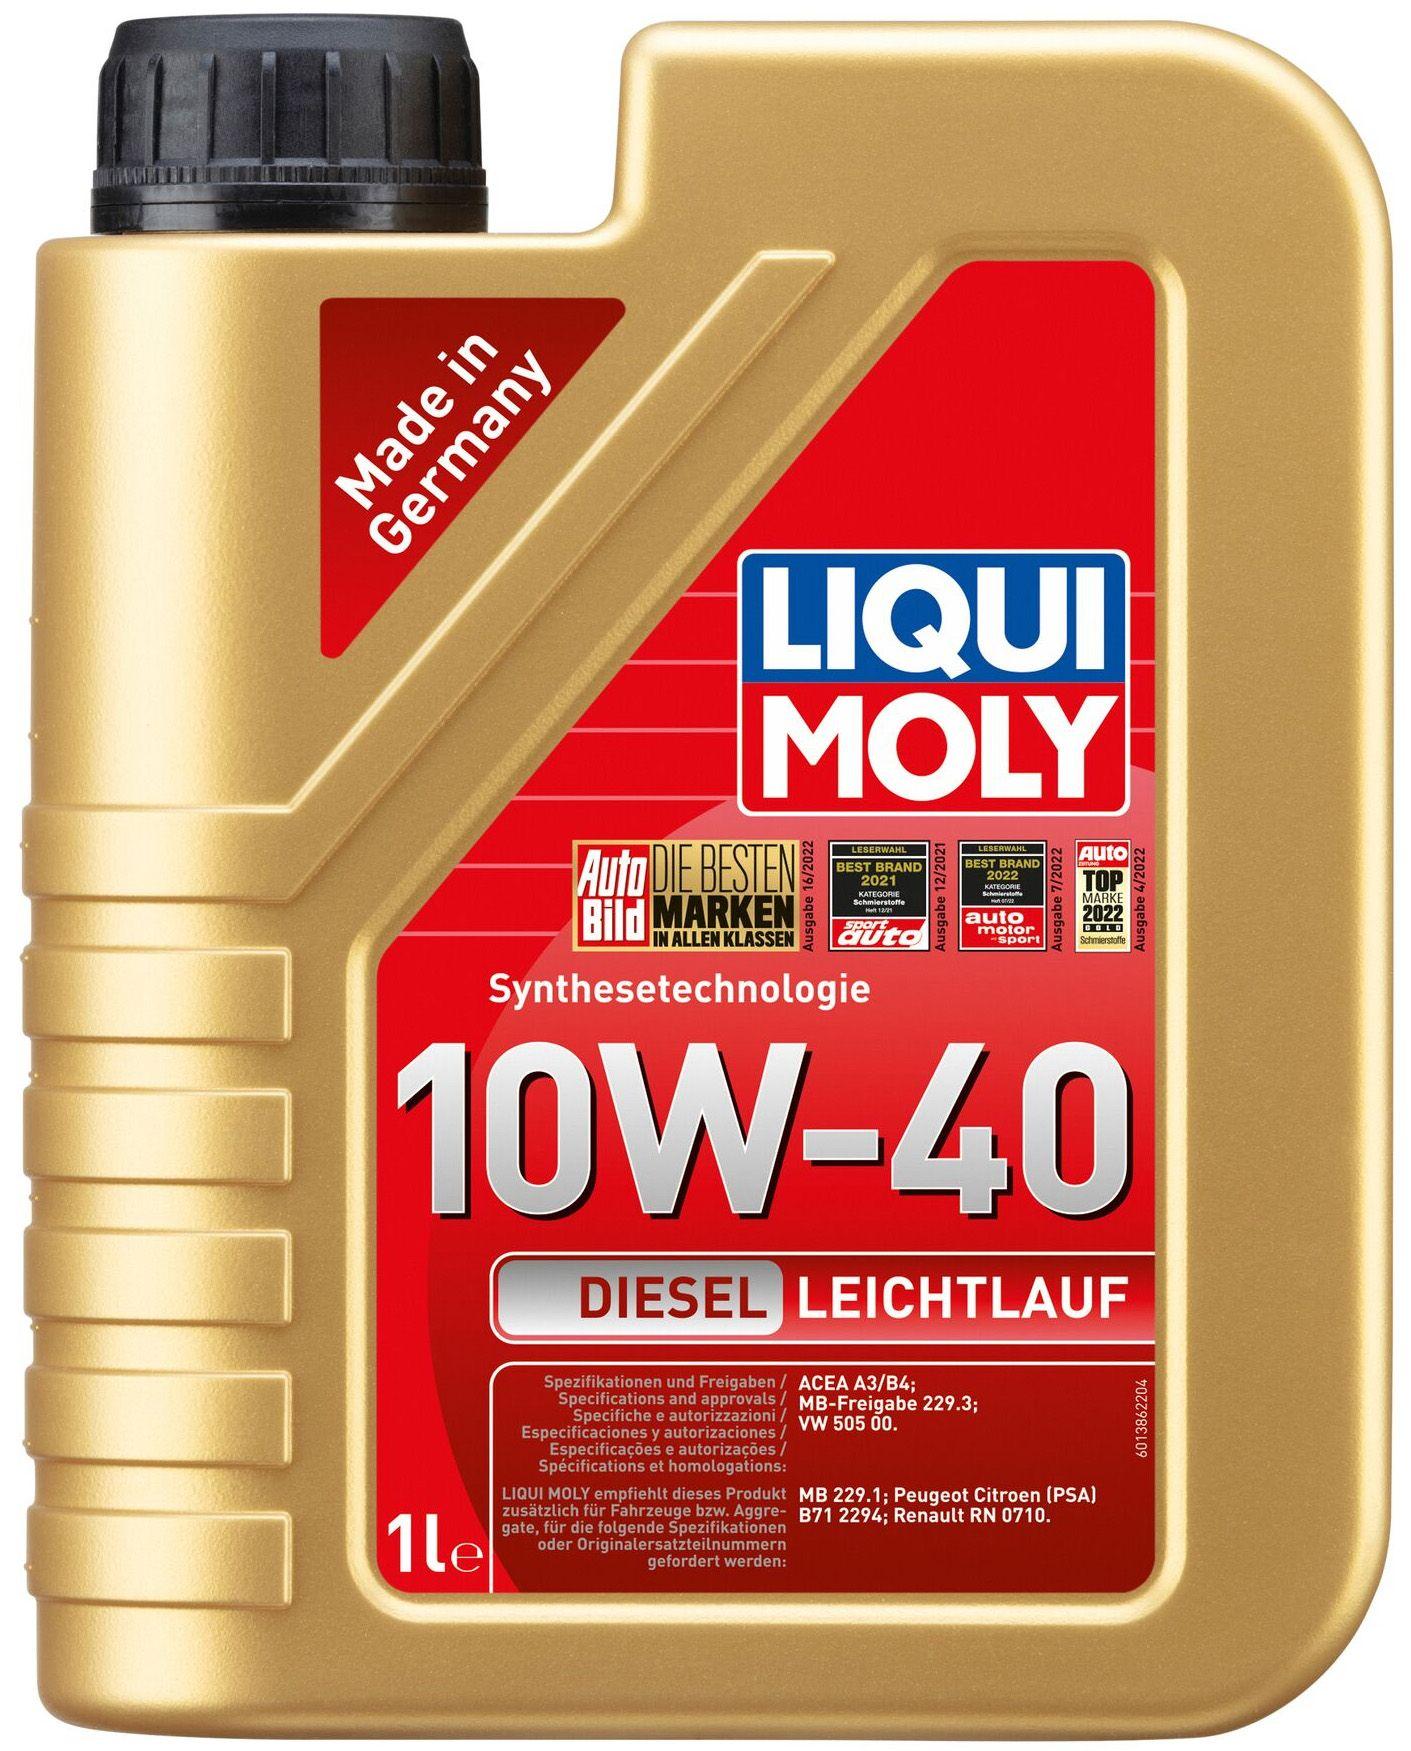 Моторное масло Liqui Moly Diesel Leichtlauf 10W-40, 1 литр (1386)